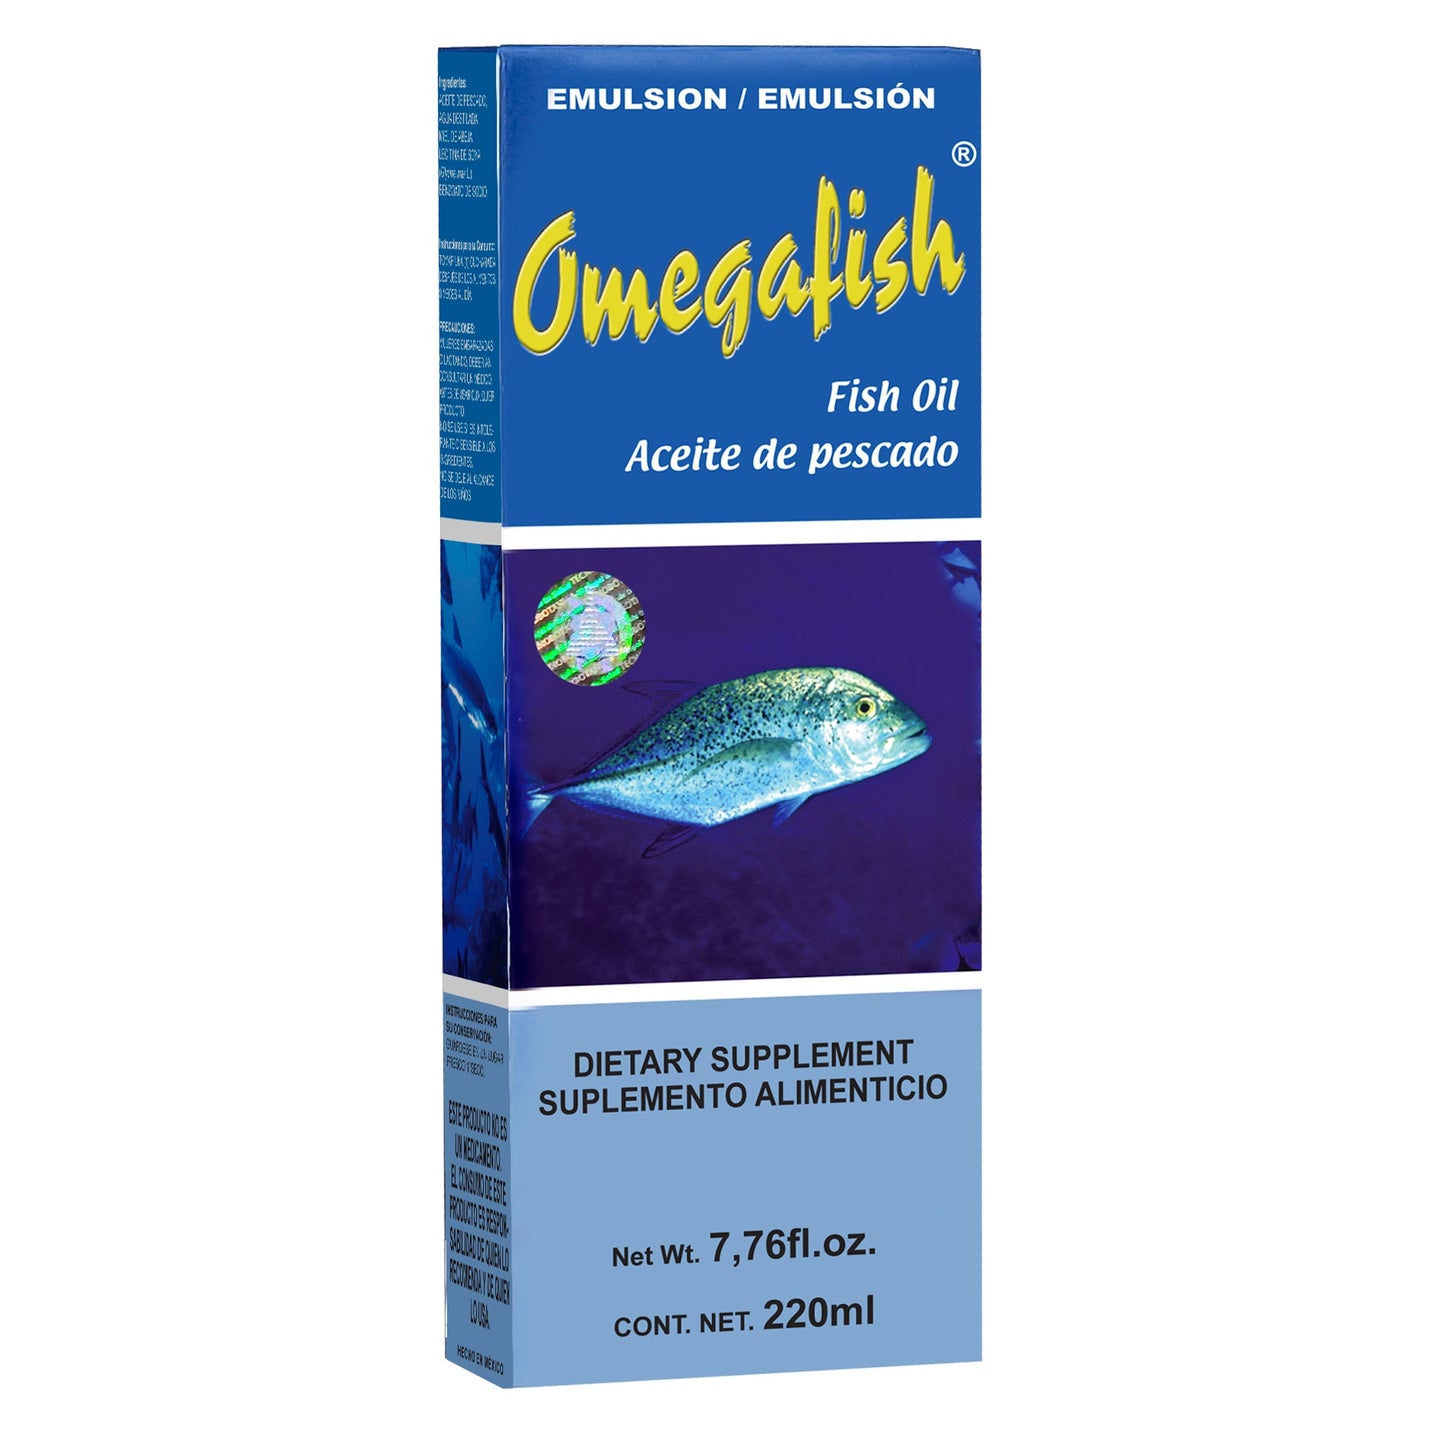 OMEGAFISH ® emulsión 220ml